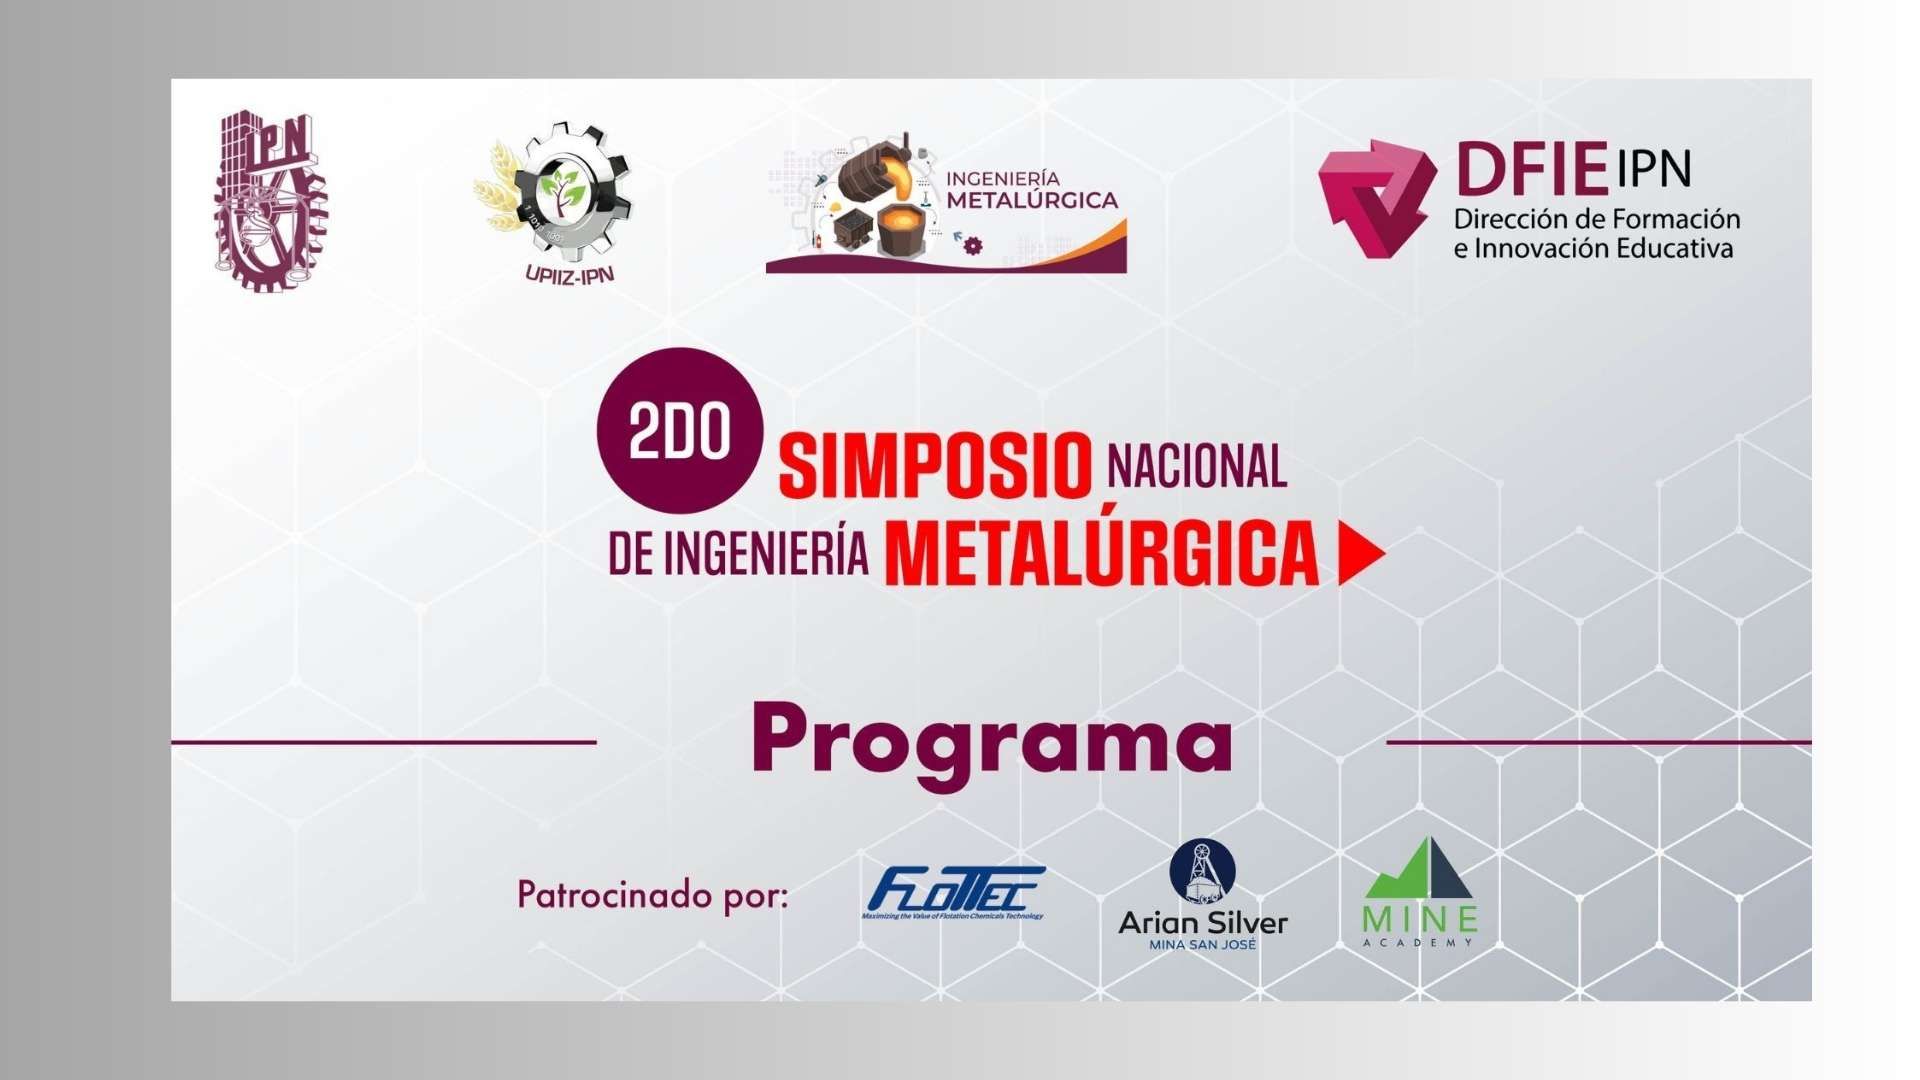 Programa del 2do Simposio de Ingeniería Metalúrgica de la UPIIZ-IPN